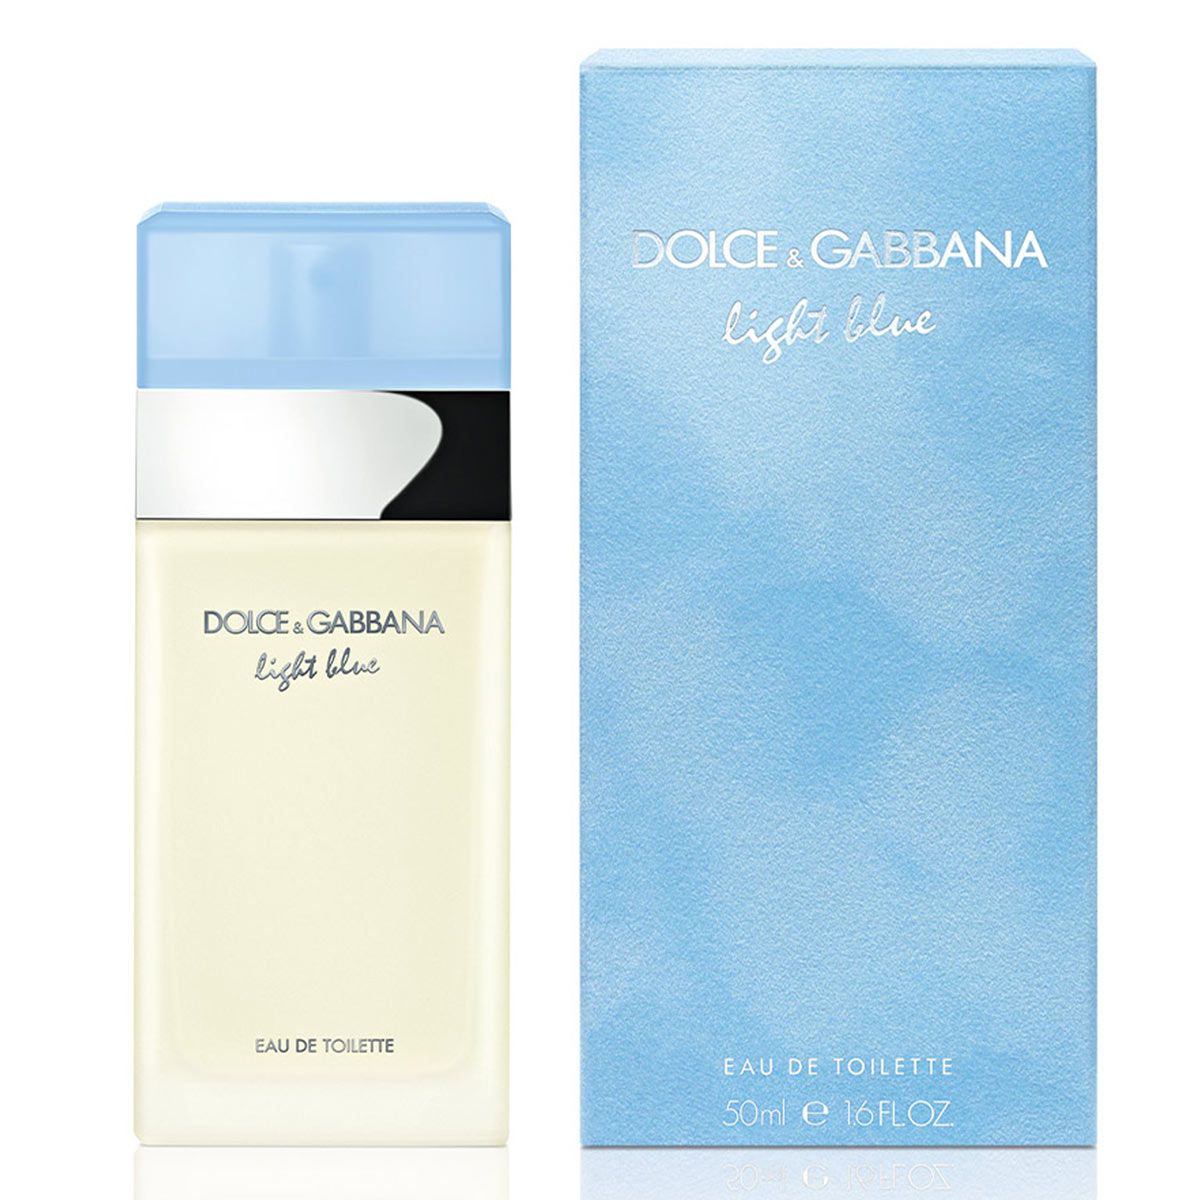  Dolce & Gabbana Light Blue 